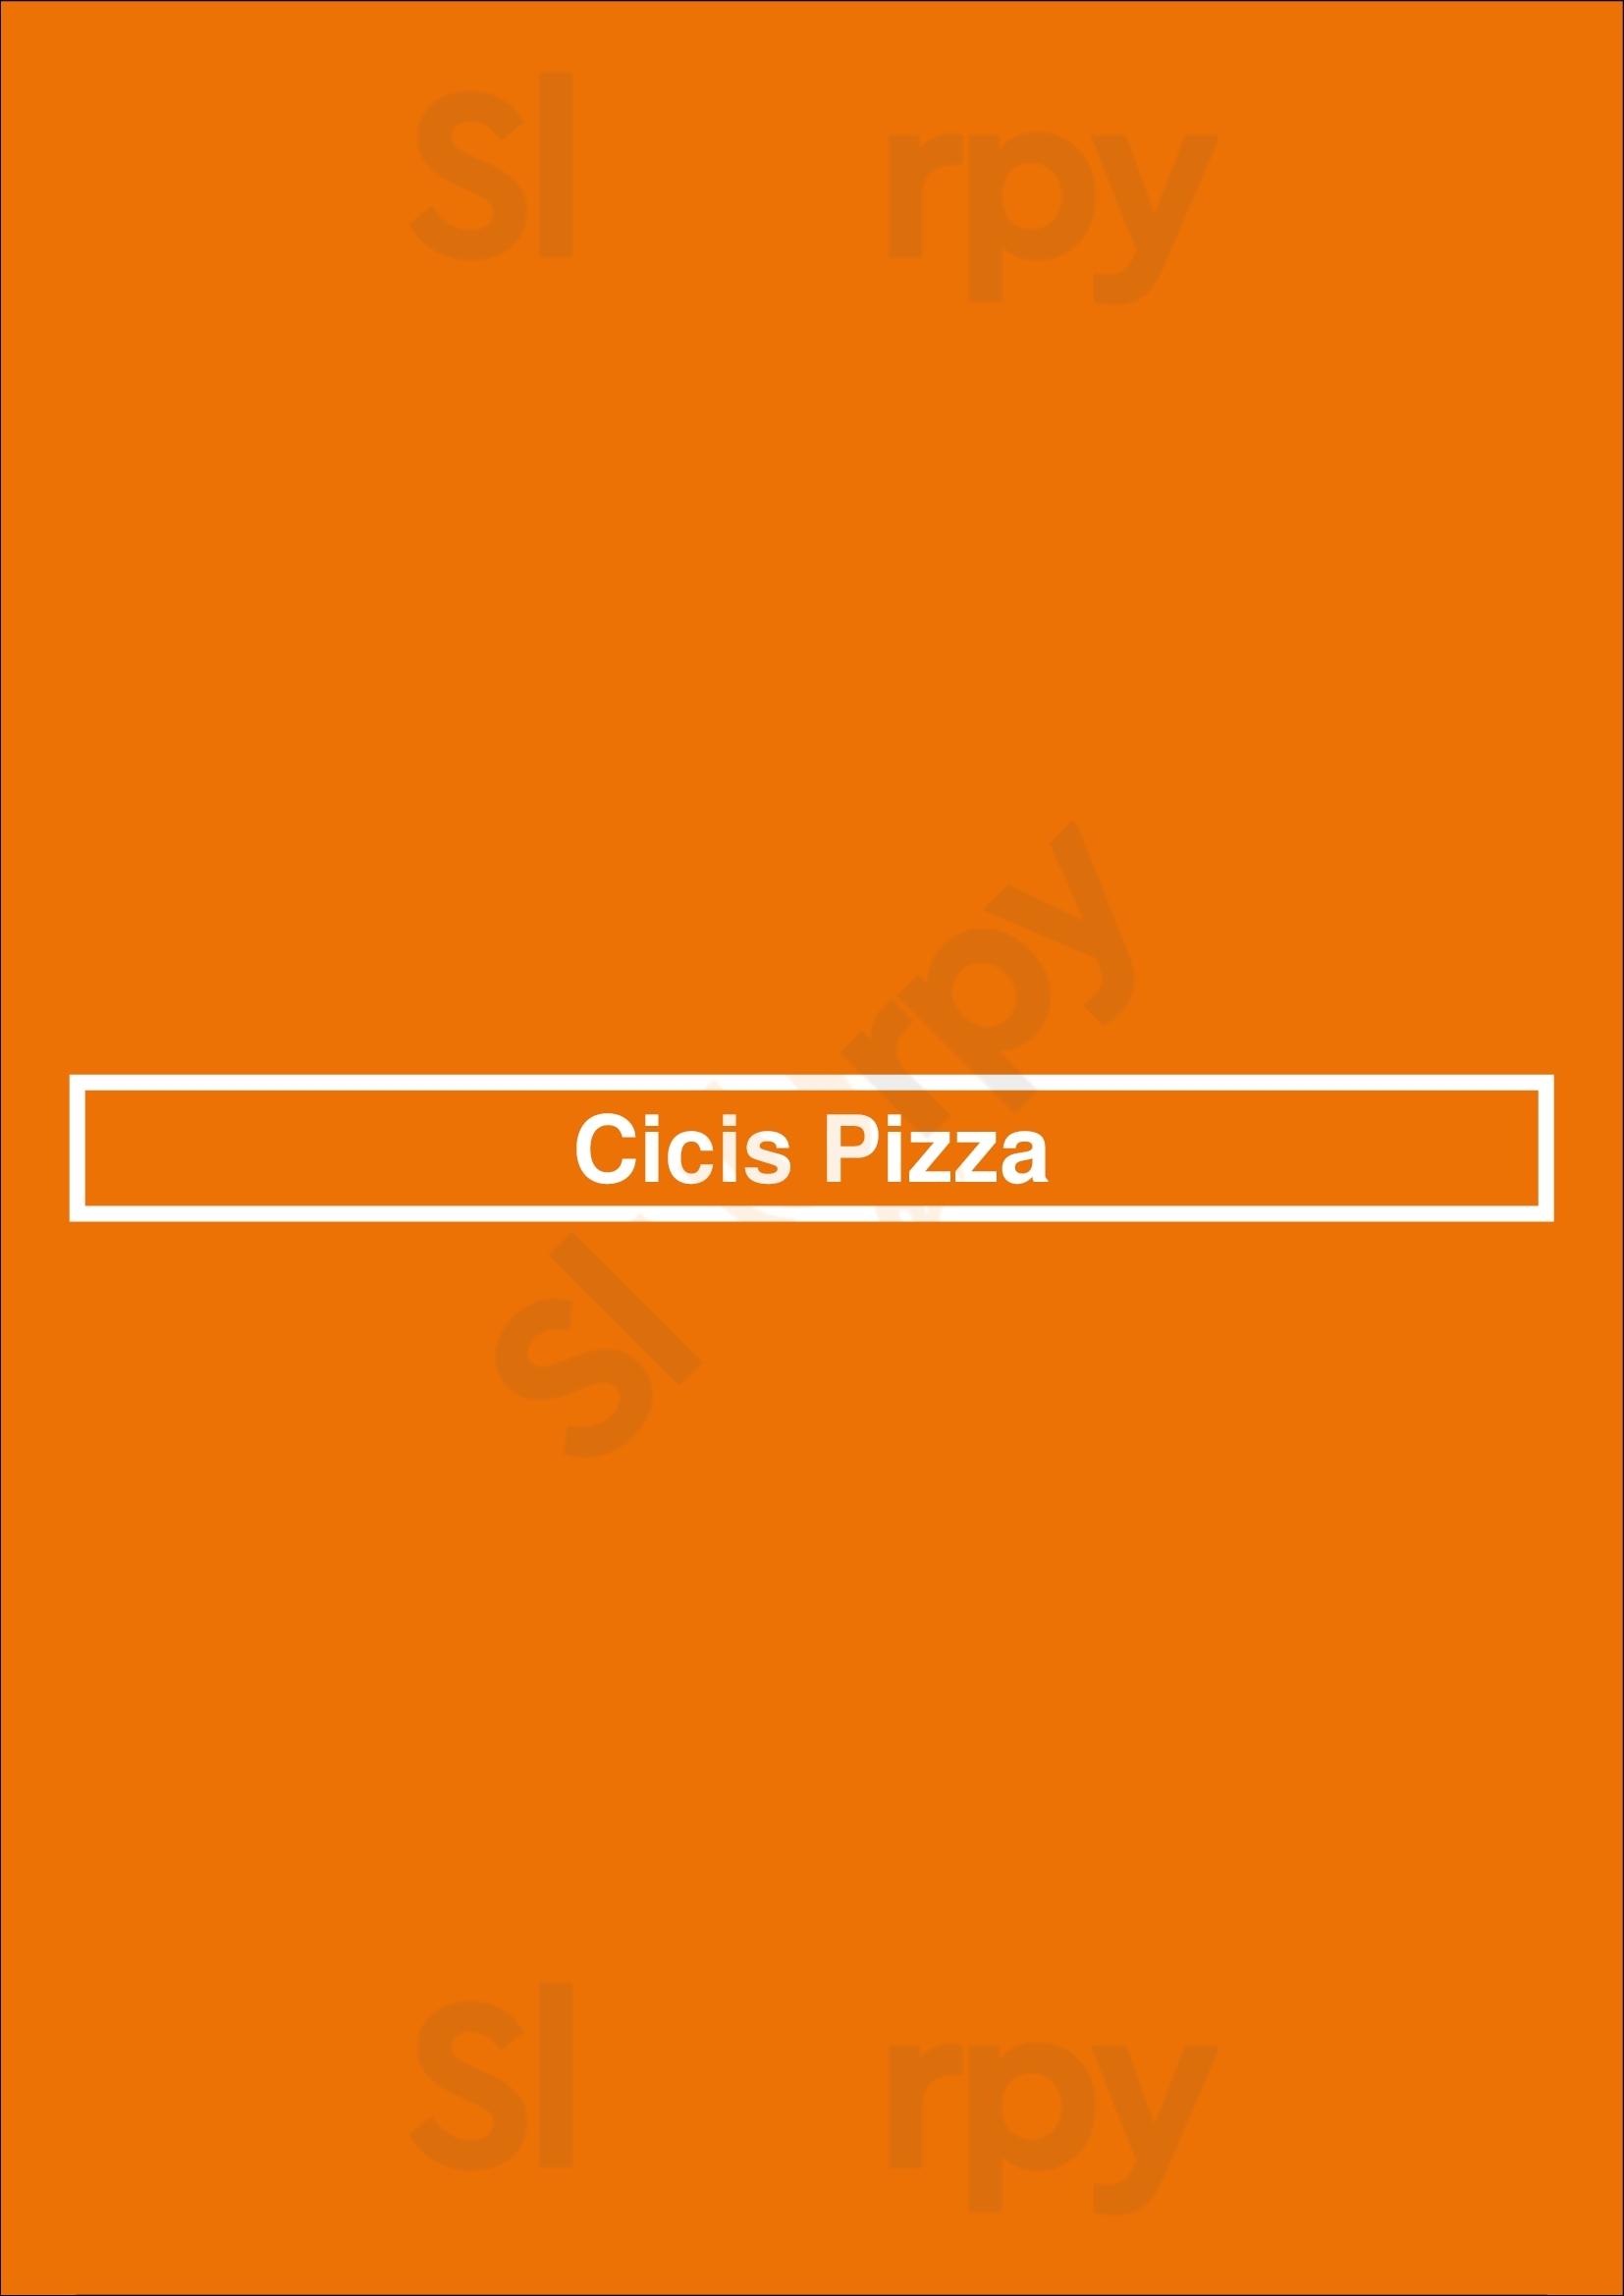 Cicis Pizza Dallas Menu - 1